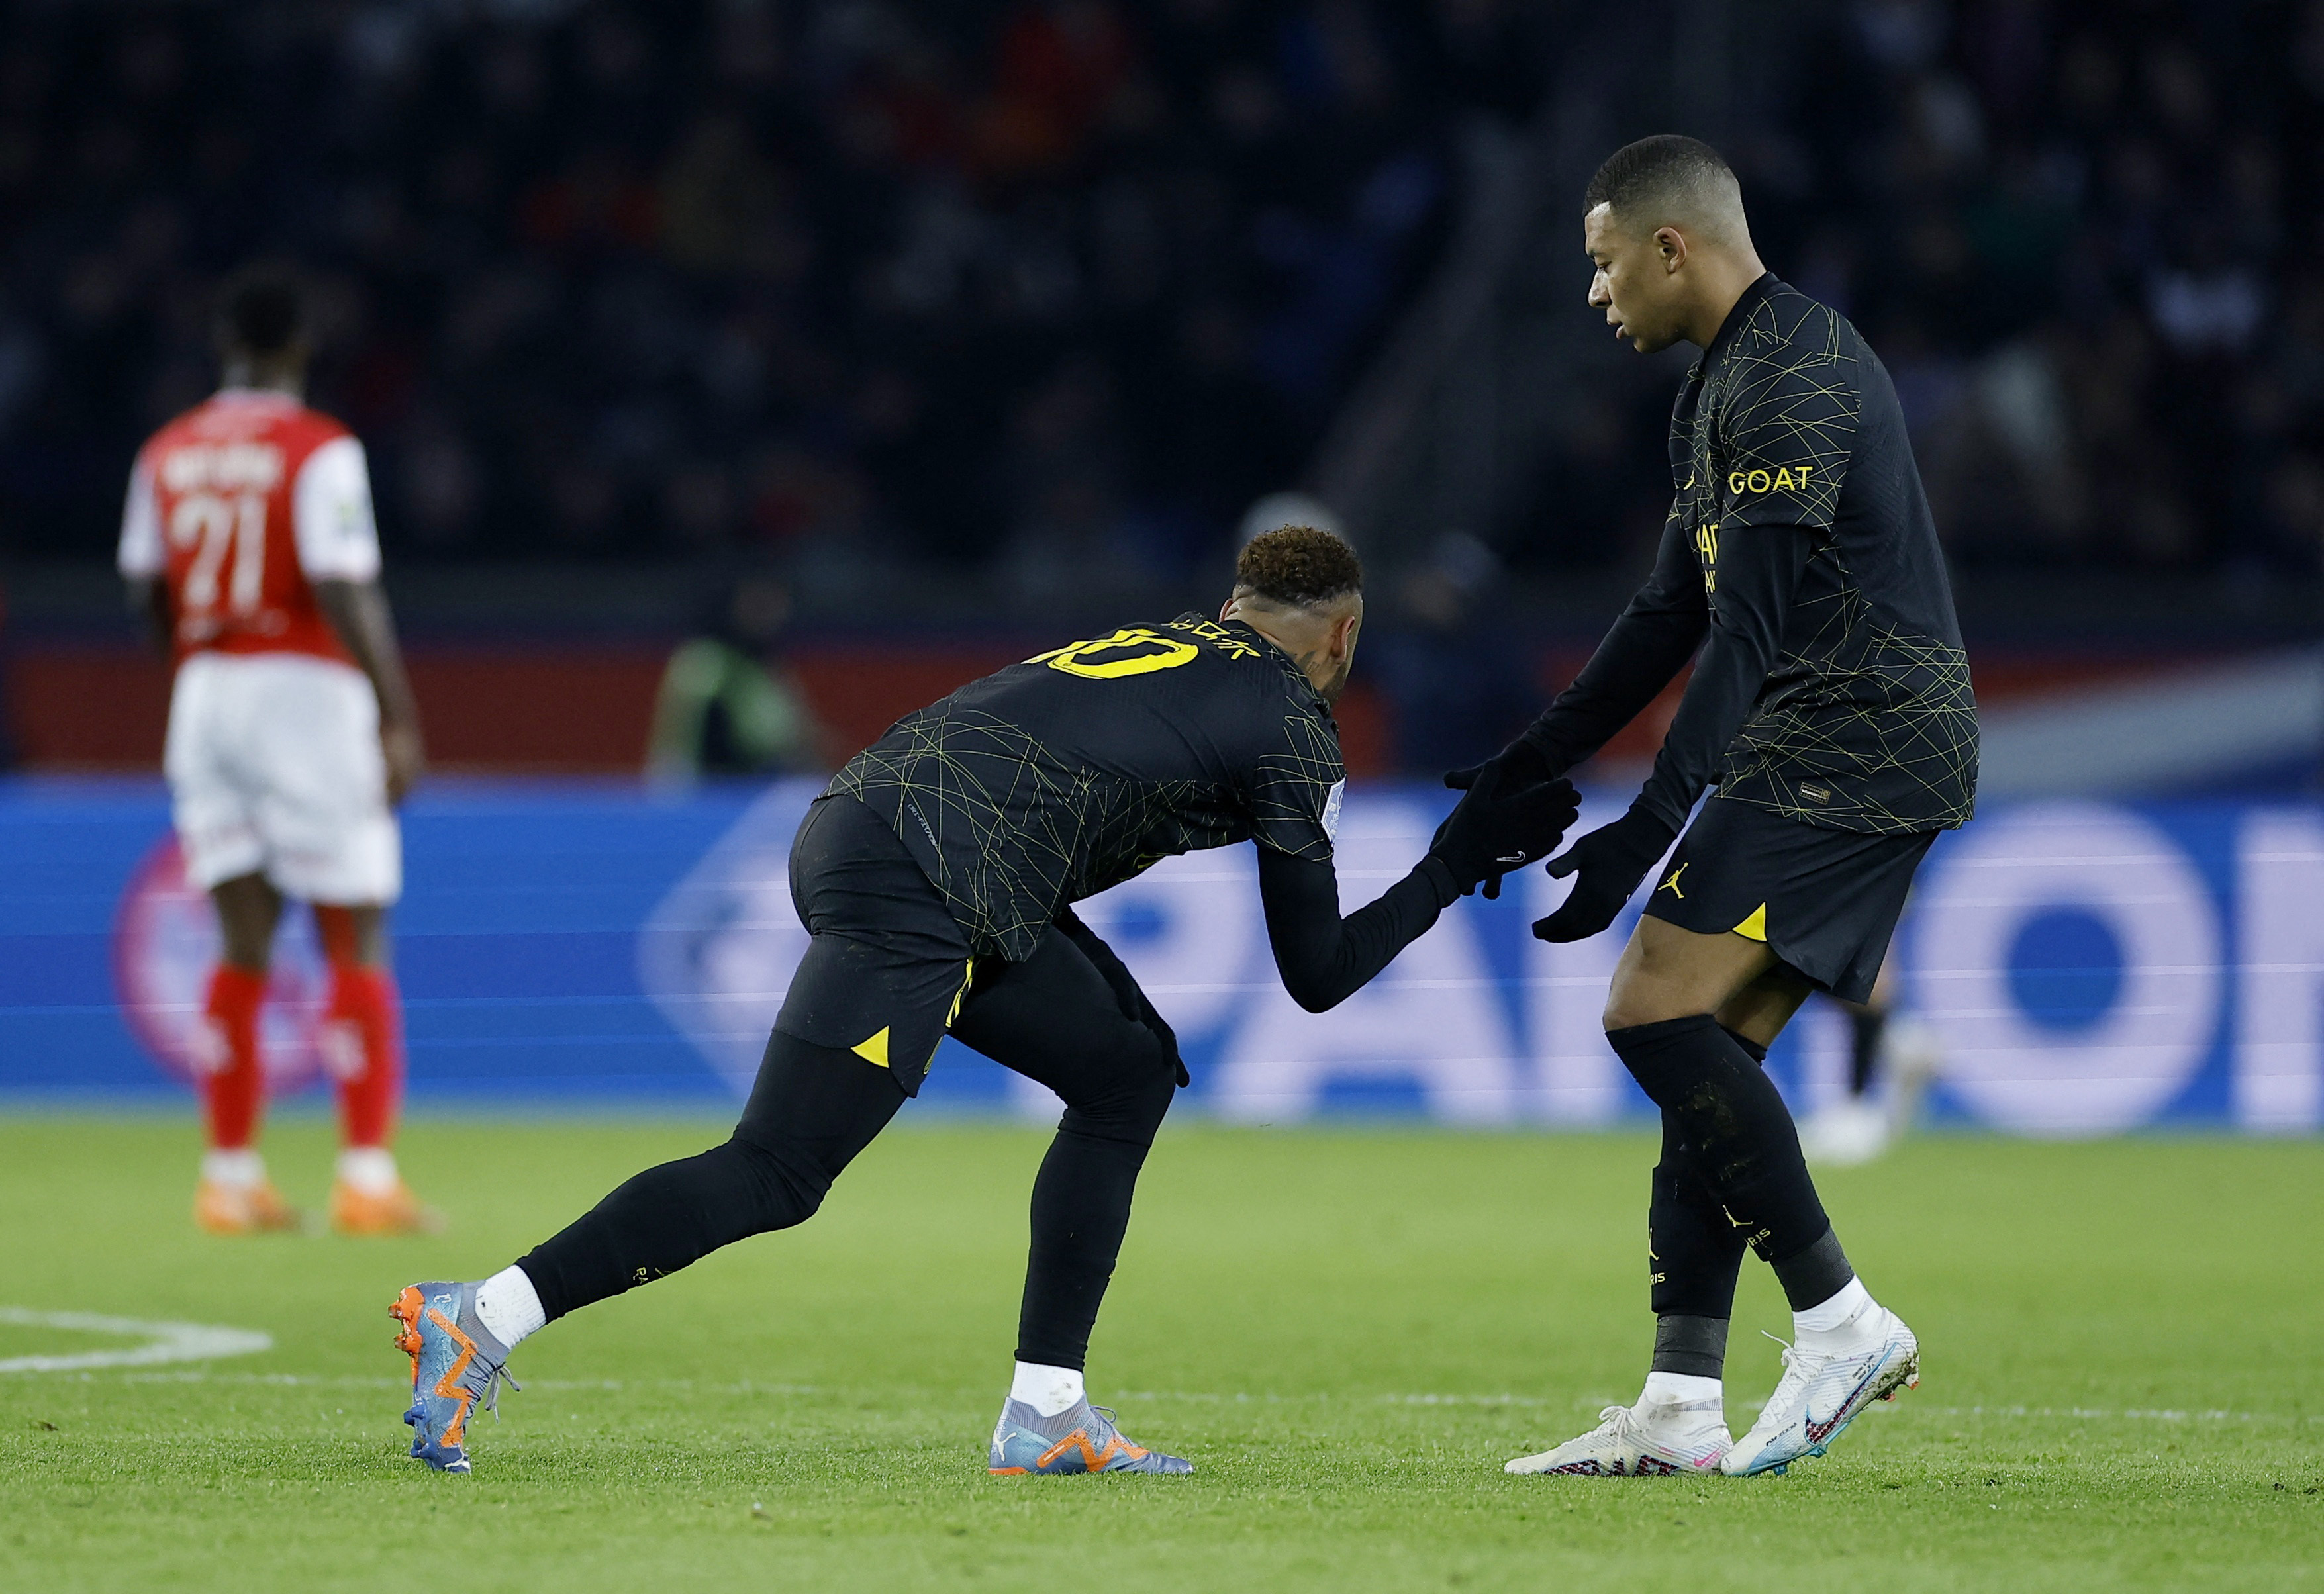 Greeting between Neymar and Kylian Mbappé (REUTERS/Christian Hartmann)